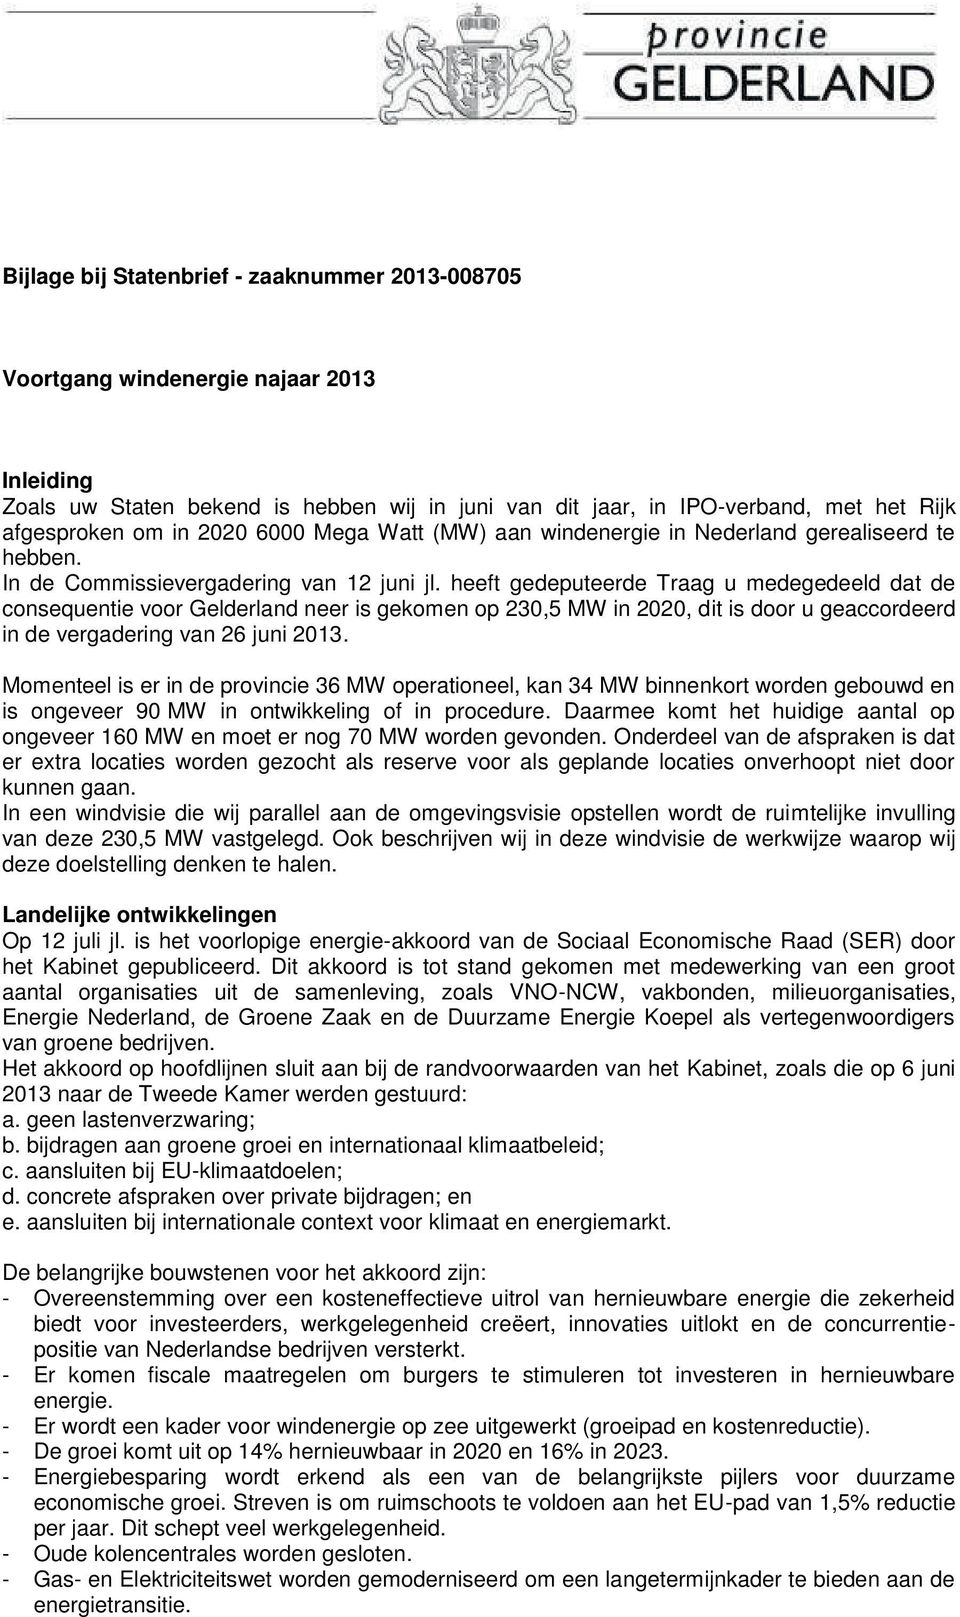 heeft gedeputeerde Traag u medegedeeld dat de consequentie voor Gelderland neer is gekomen op 230,5 MW in 2020, dit is door u geaccordeerd in de vergadering van 26 juni 2013.